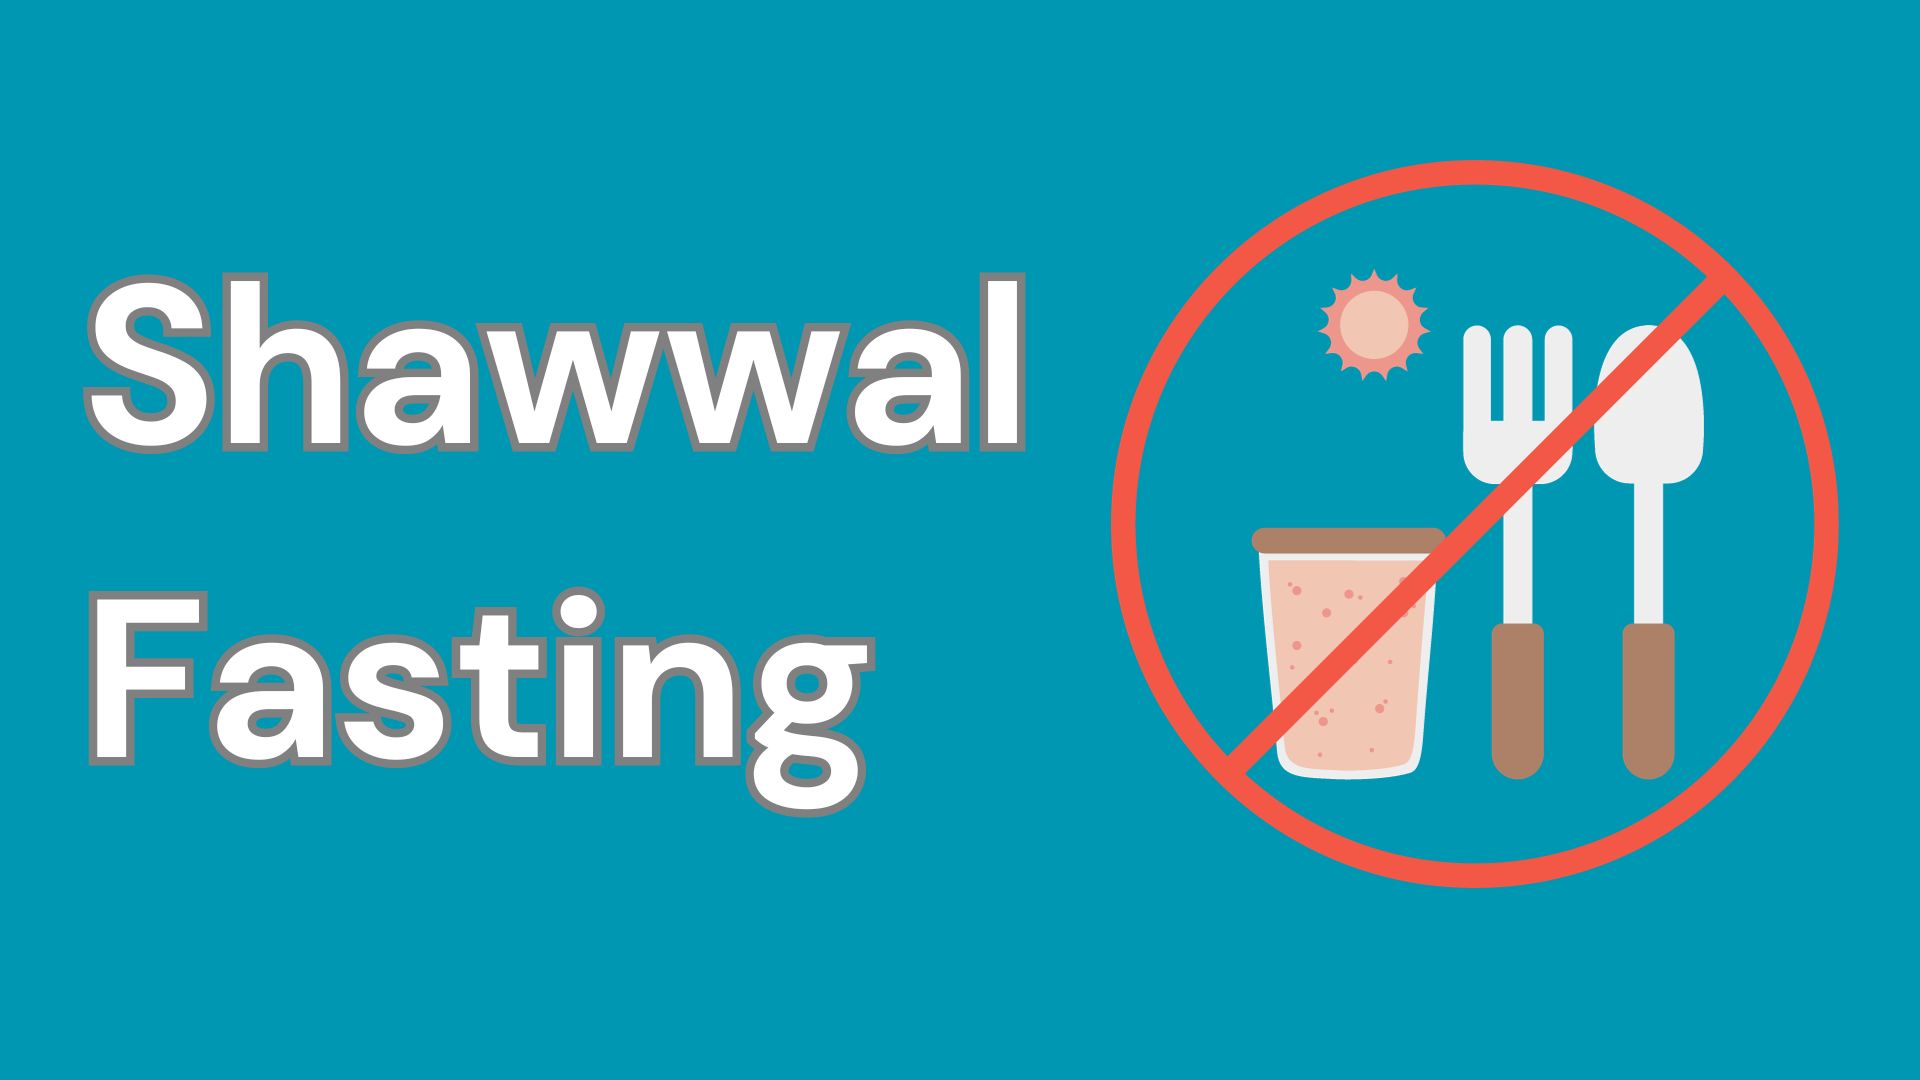 shawwal fasting